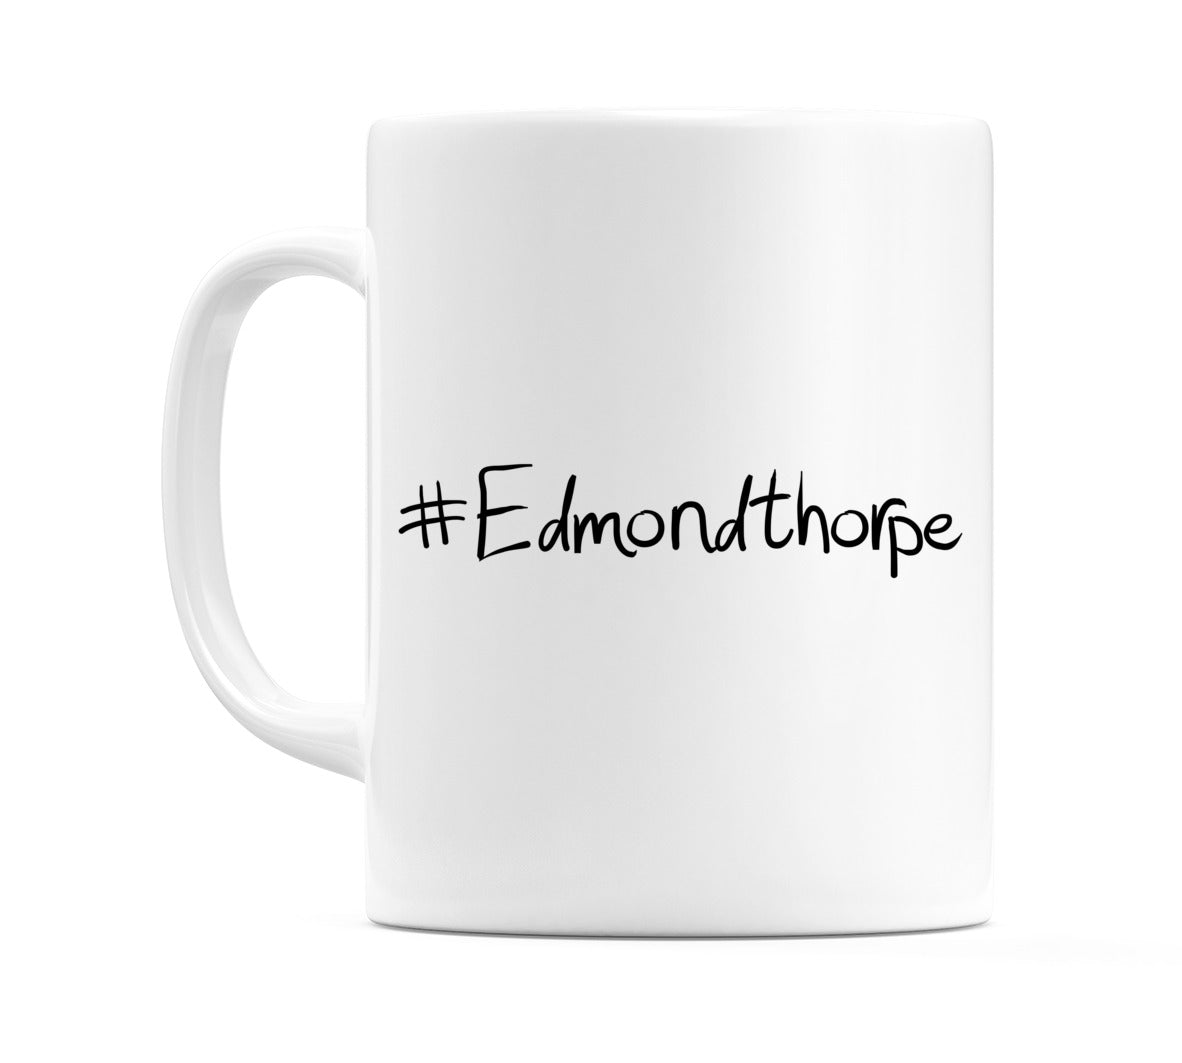 #Edmondthorpe Mug